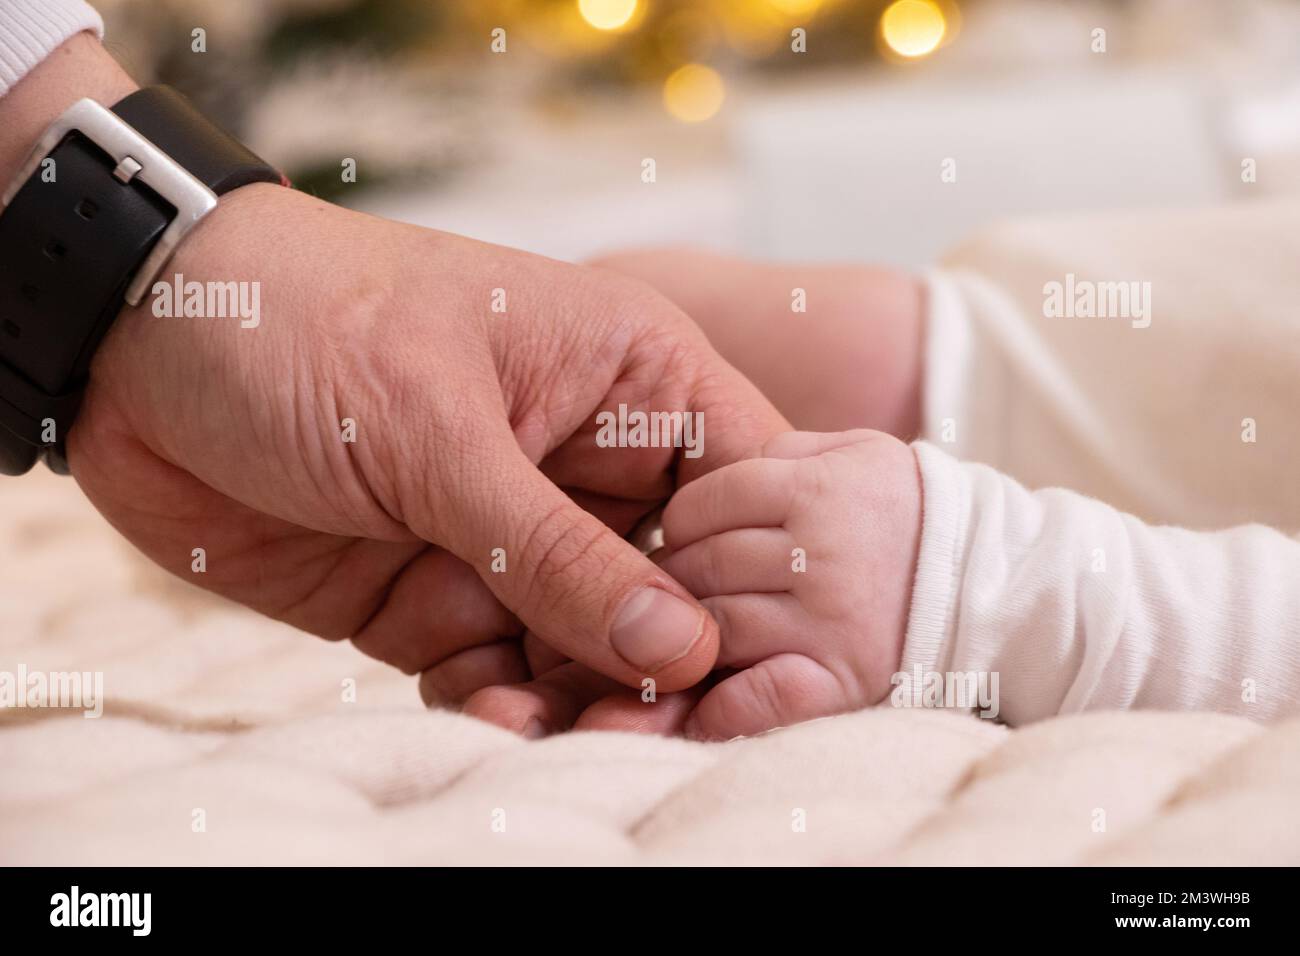 La main du papa tient la main d'un nouveau-né gros plan, amour et famille, main d'un nouveau-né, enfants Banque D'Images